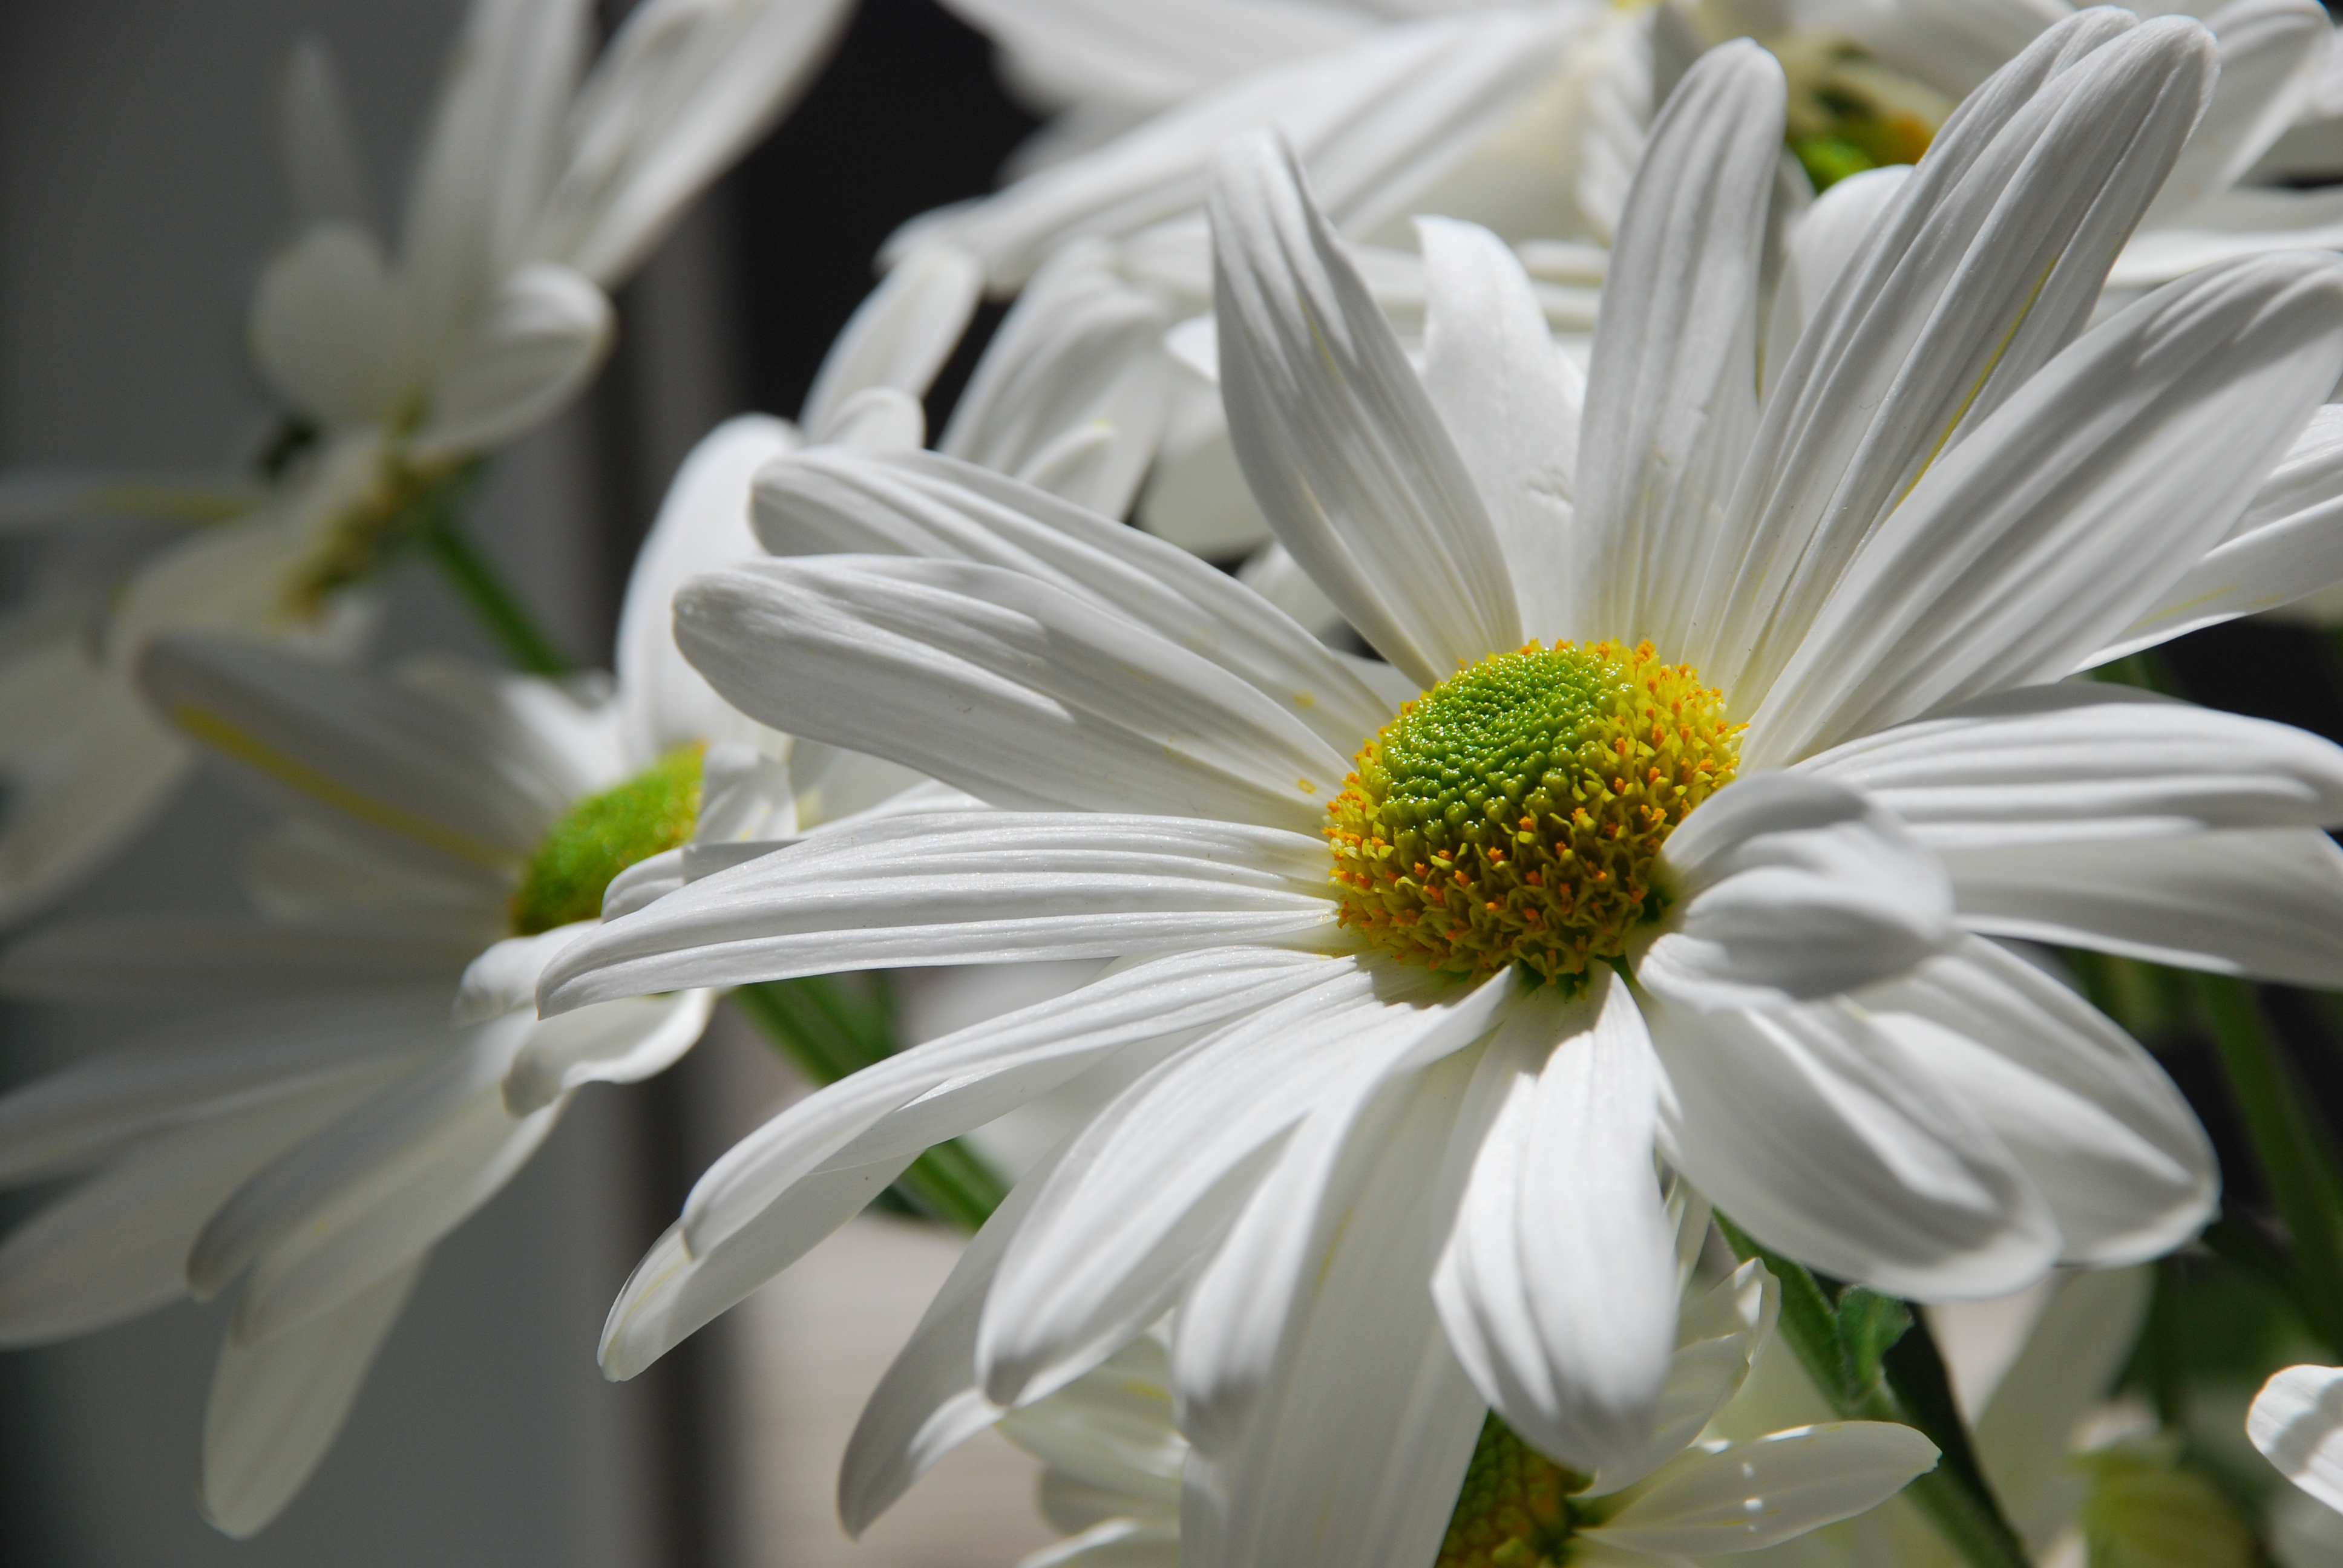 White daisy photo